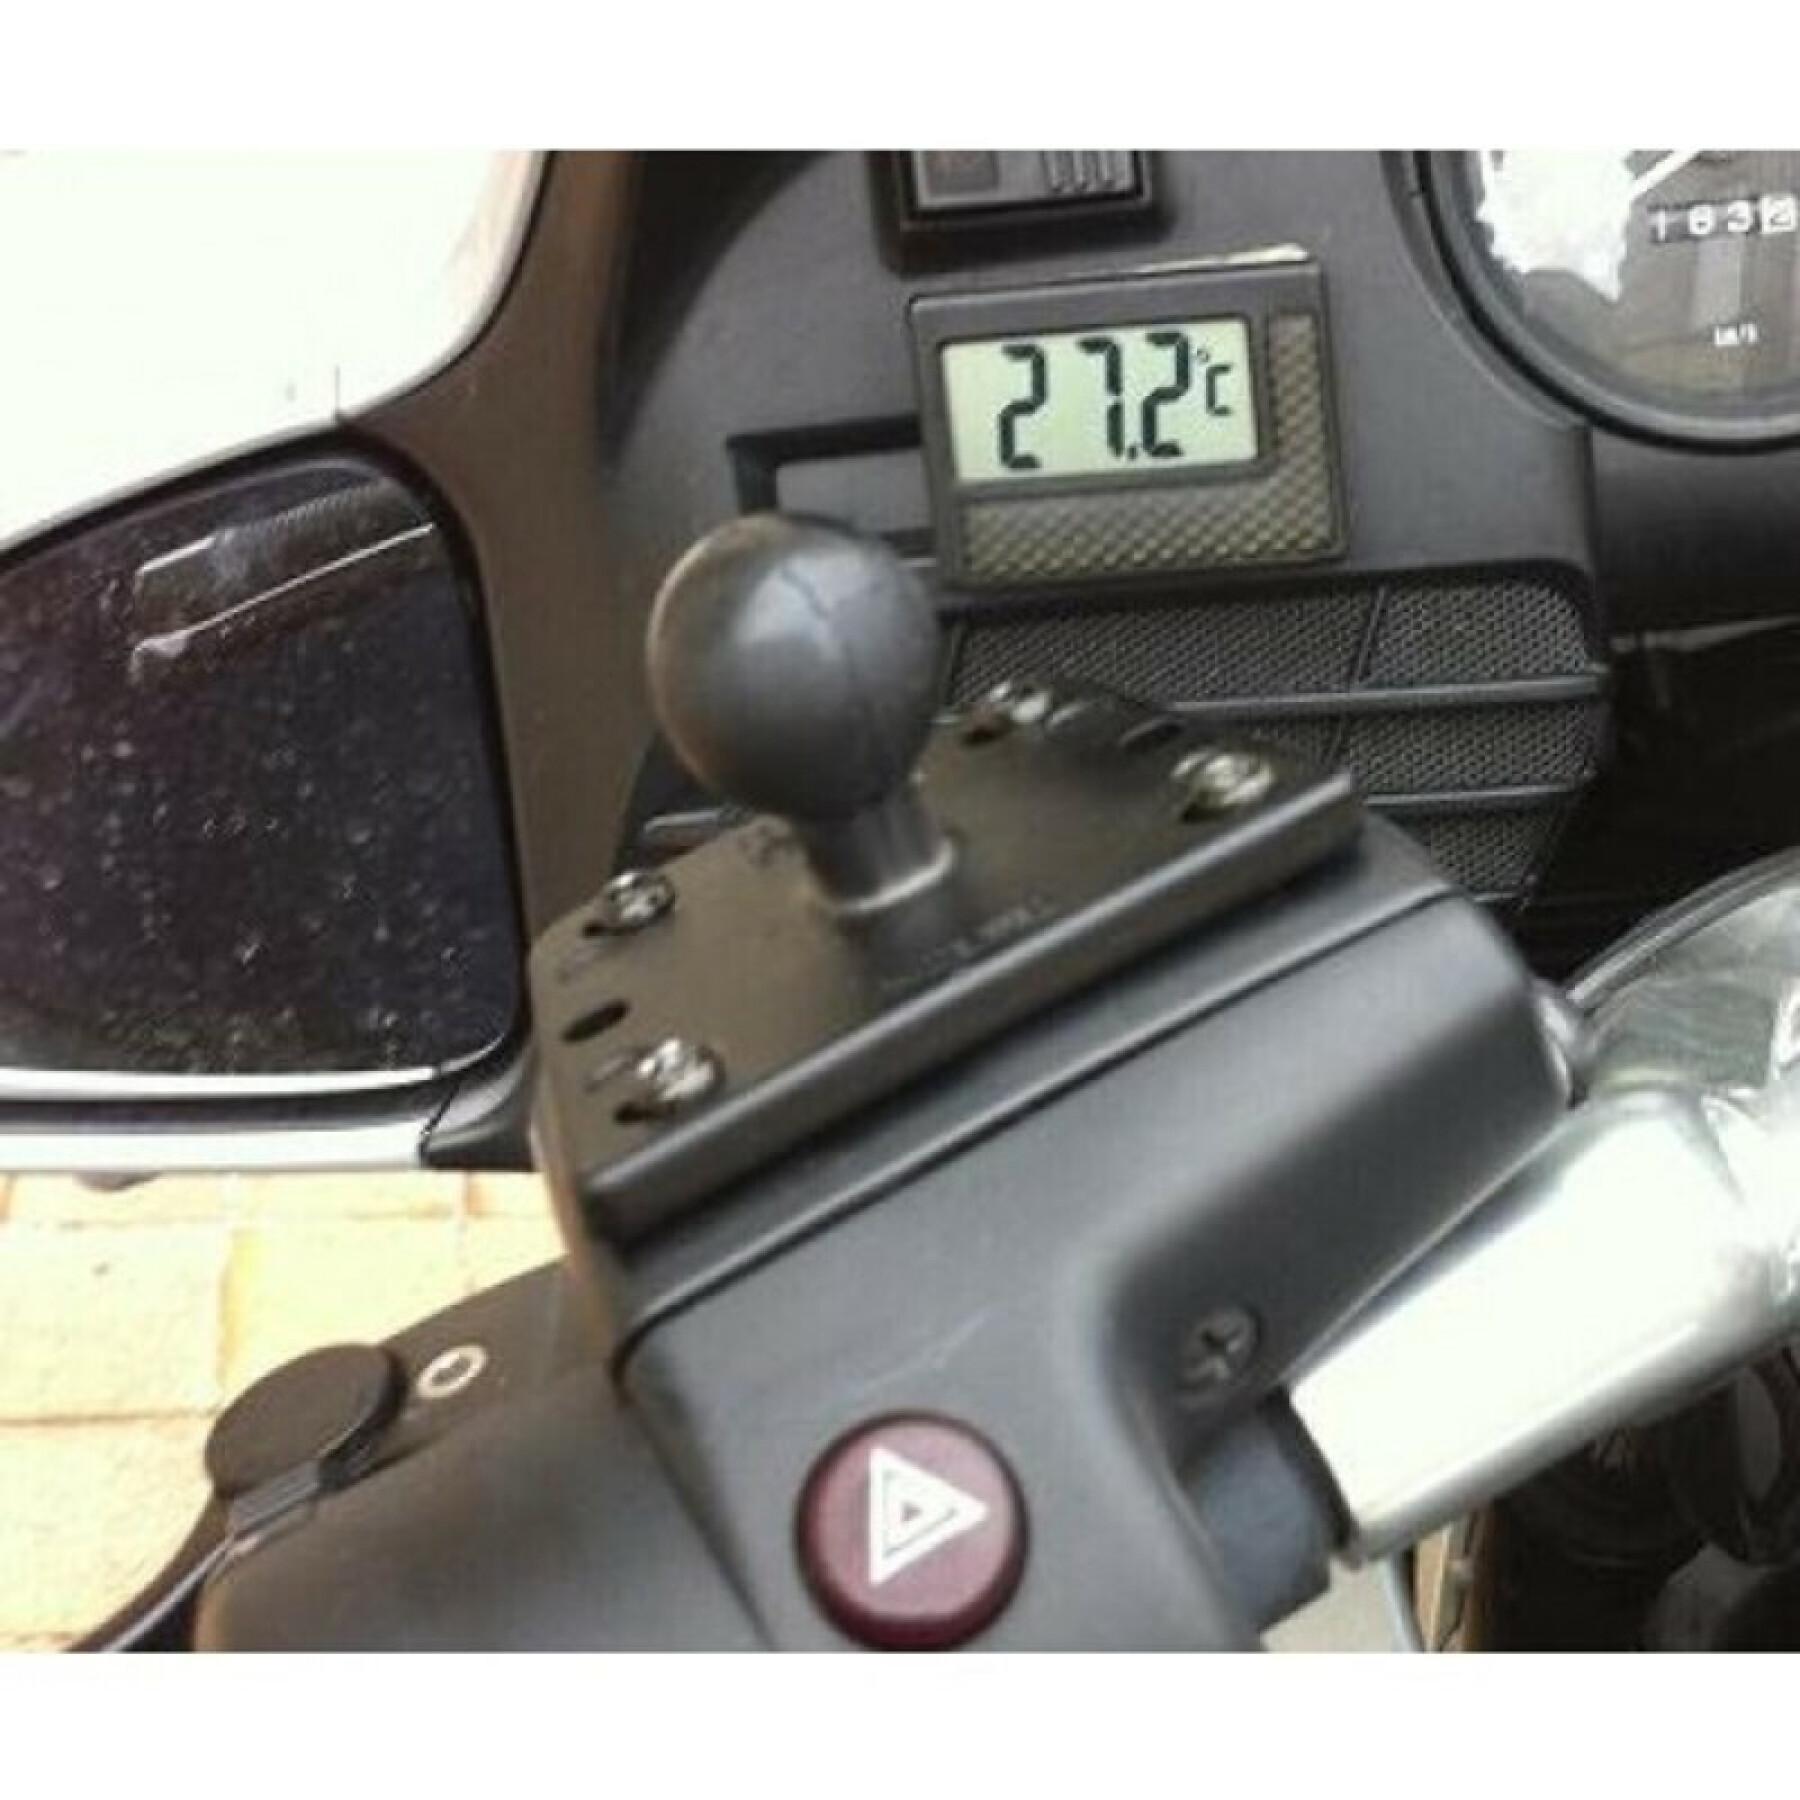 Soporte para smartphone placa base de moto fijación en depósito de freno/bola de embrague b centrada RAM Mounts